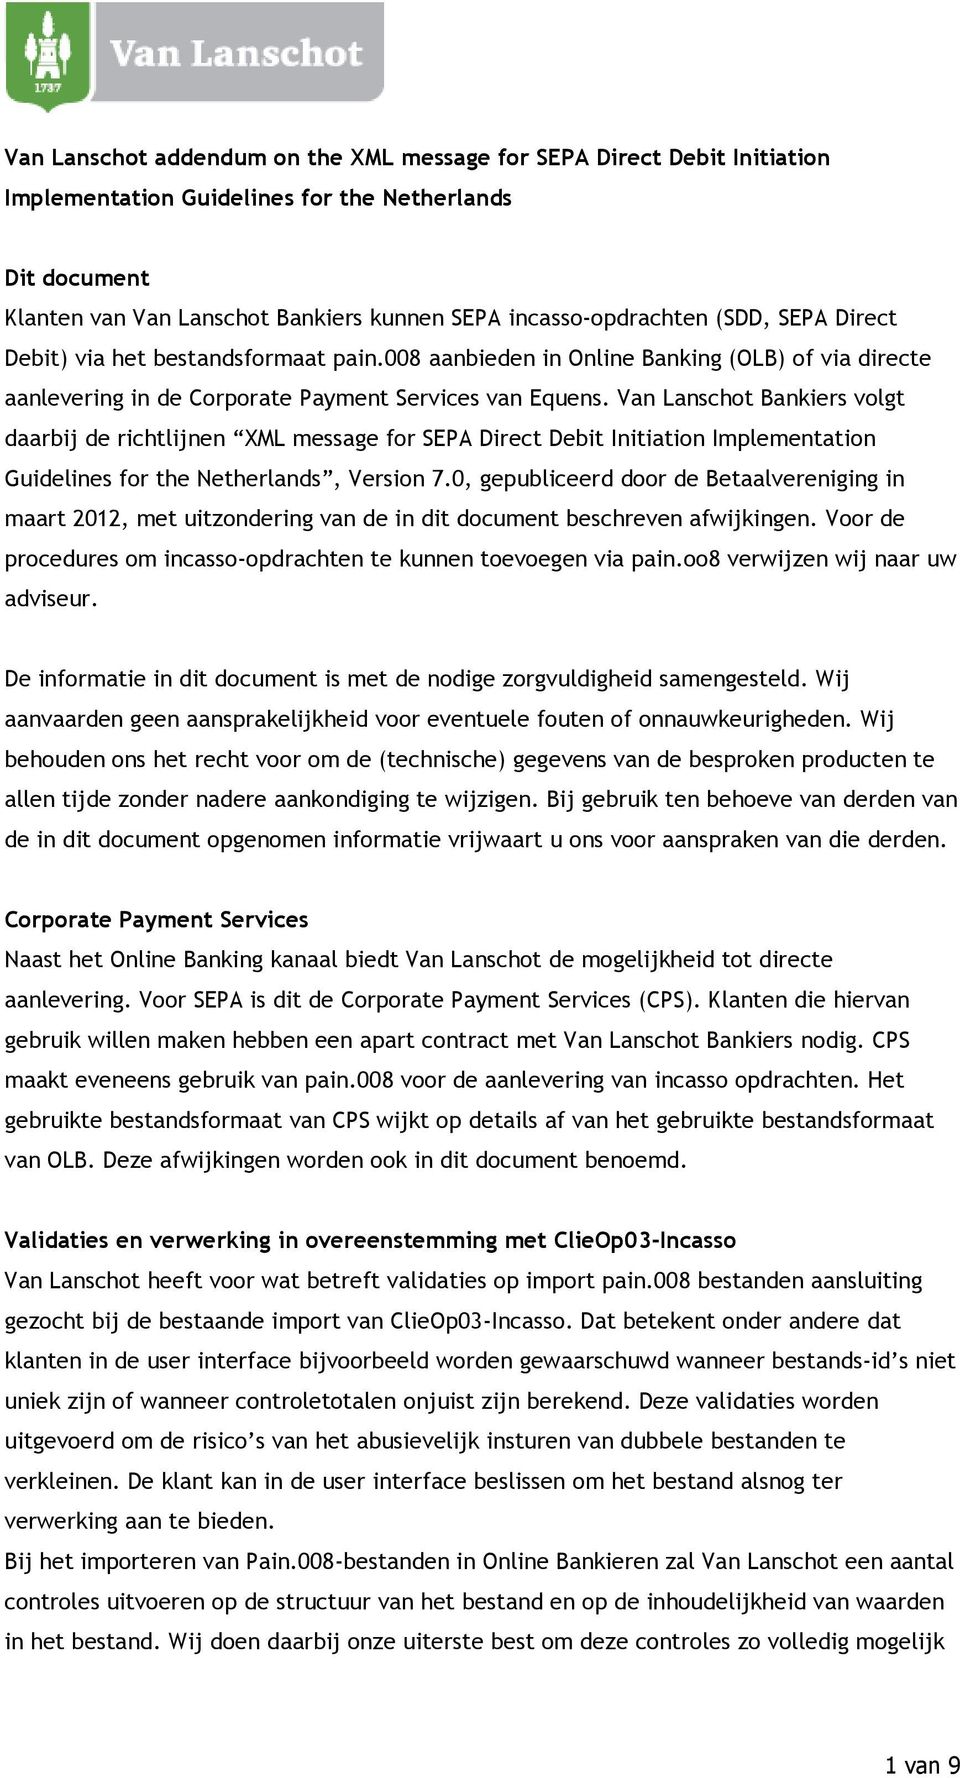 Van Lanschot Bankiers volgt daarbij de richtlijnen XML message for SEPA Direct Debit Initiation Implementation Guidelines for the Netherlands, Version 7.